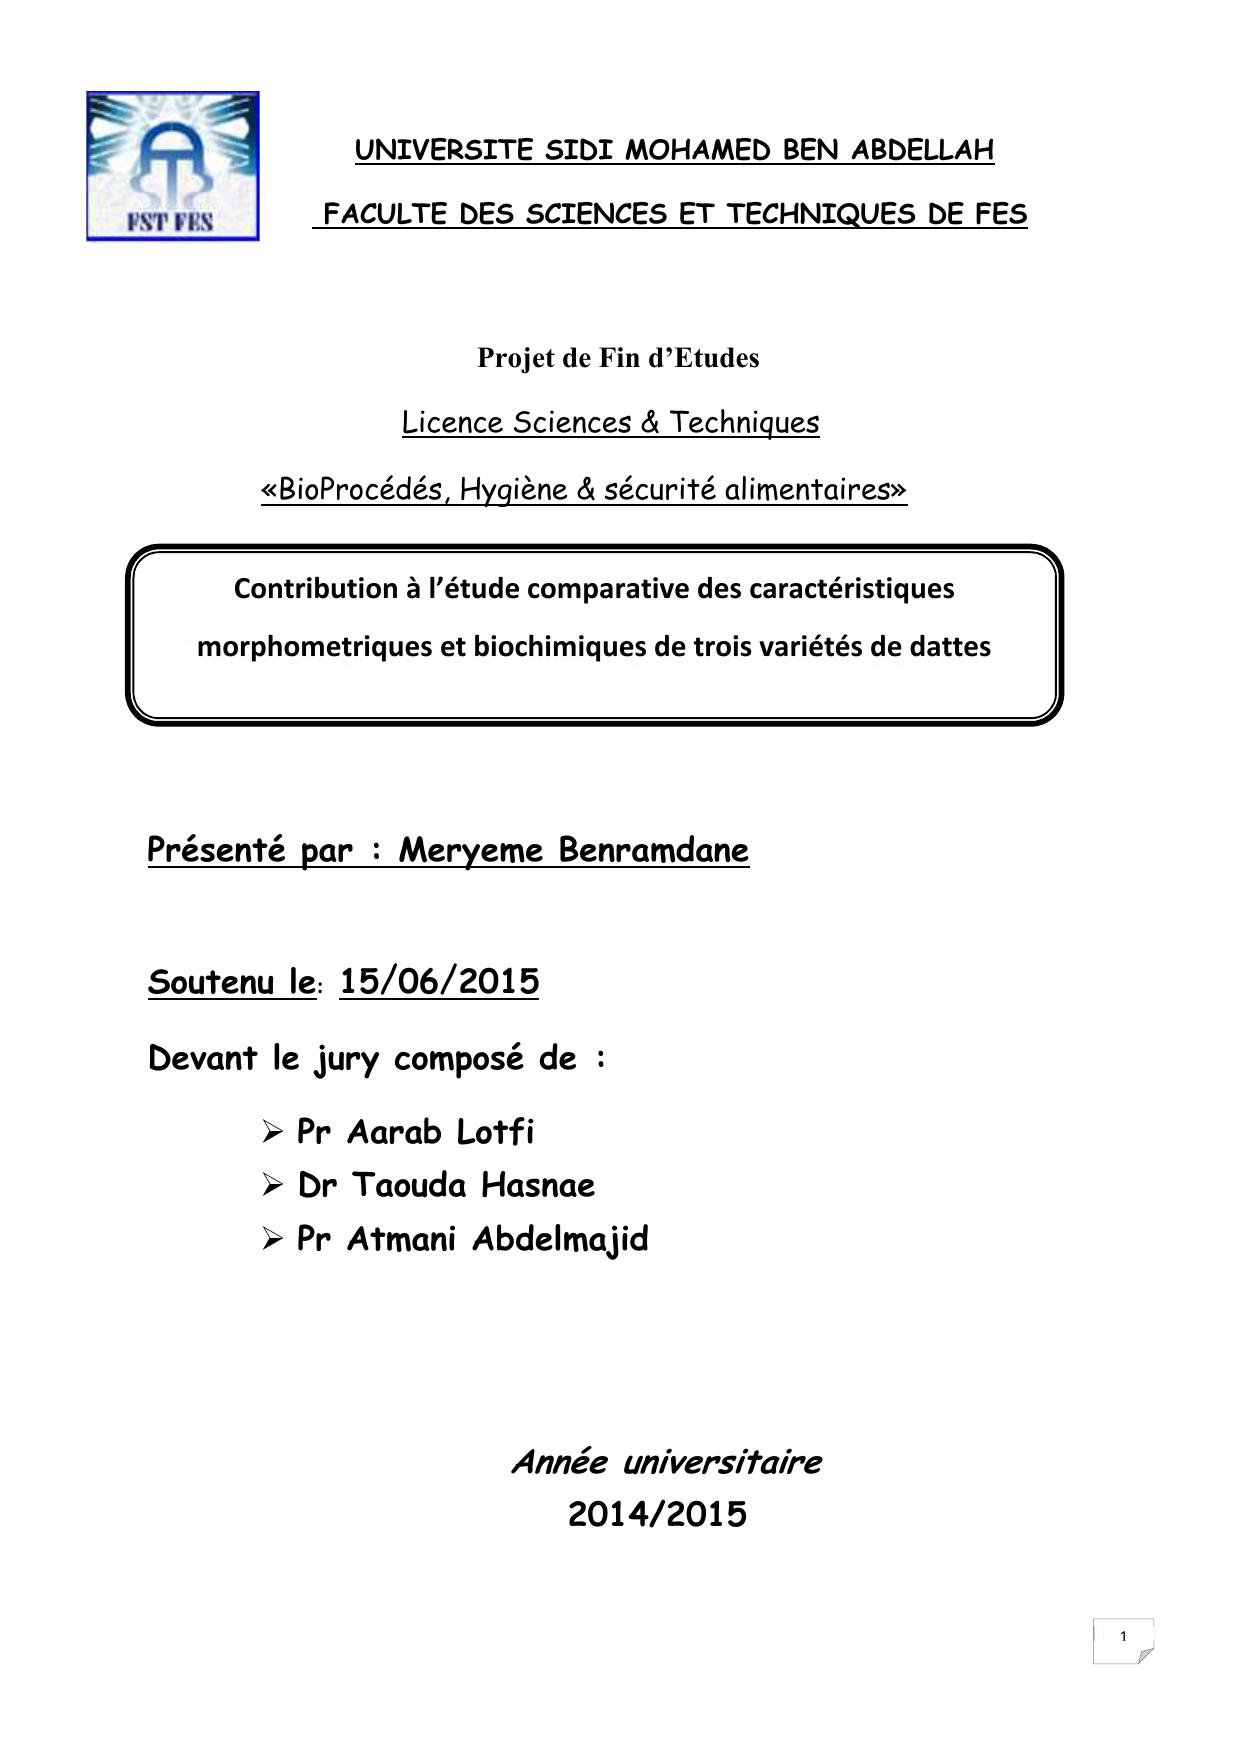 Contribution à l’étude comparative des caractéristiques morphometriques et biochimiques de trois variétés de dattes